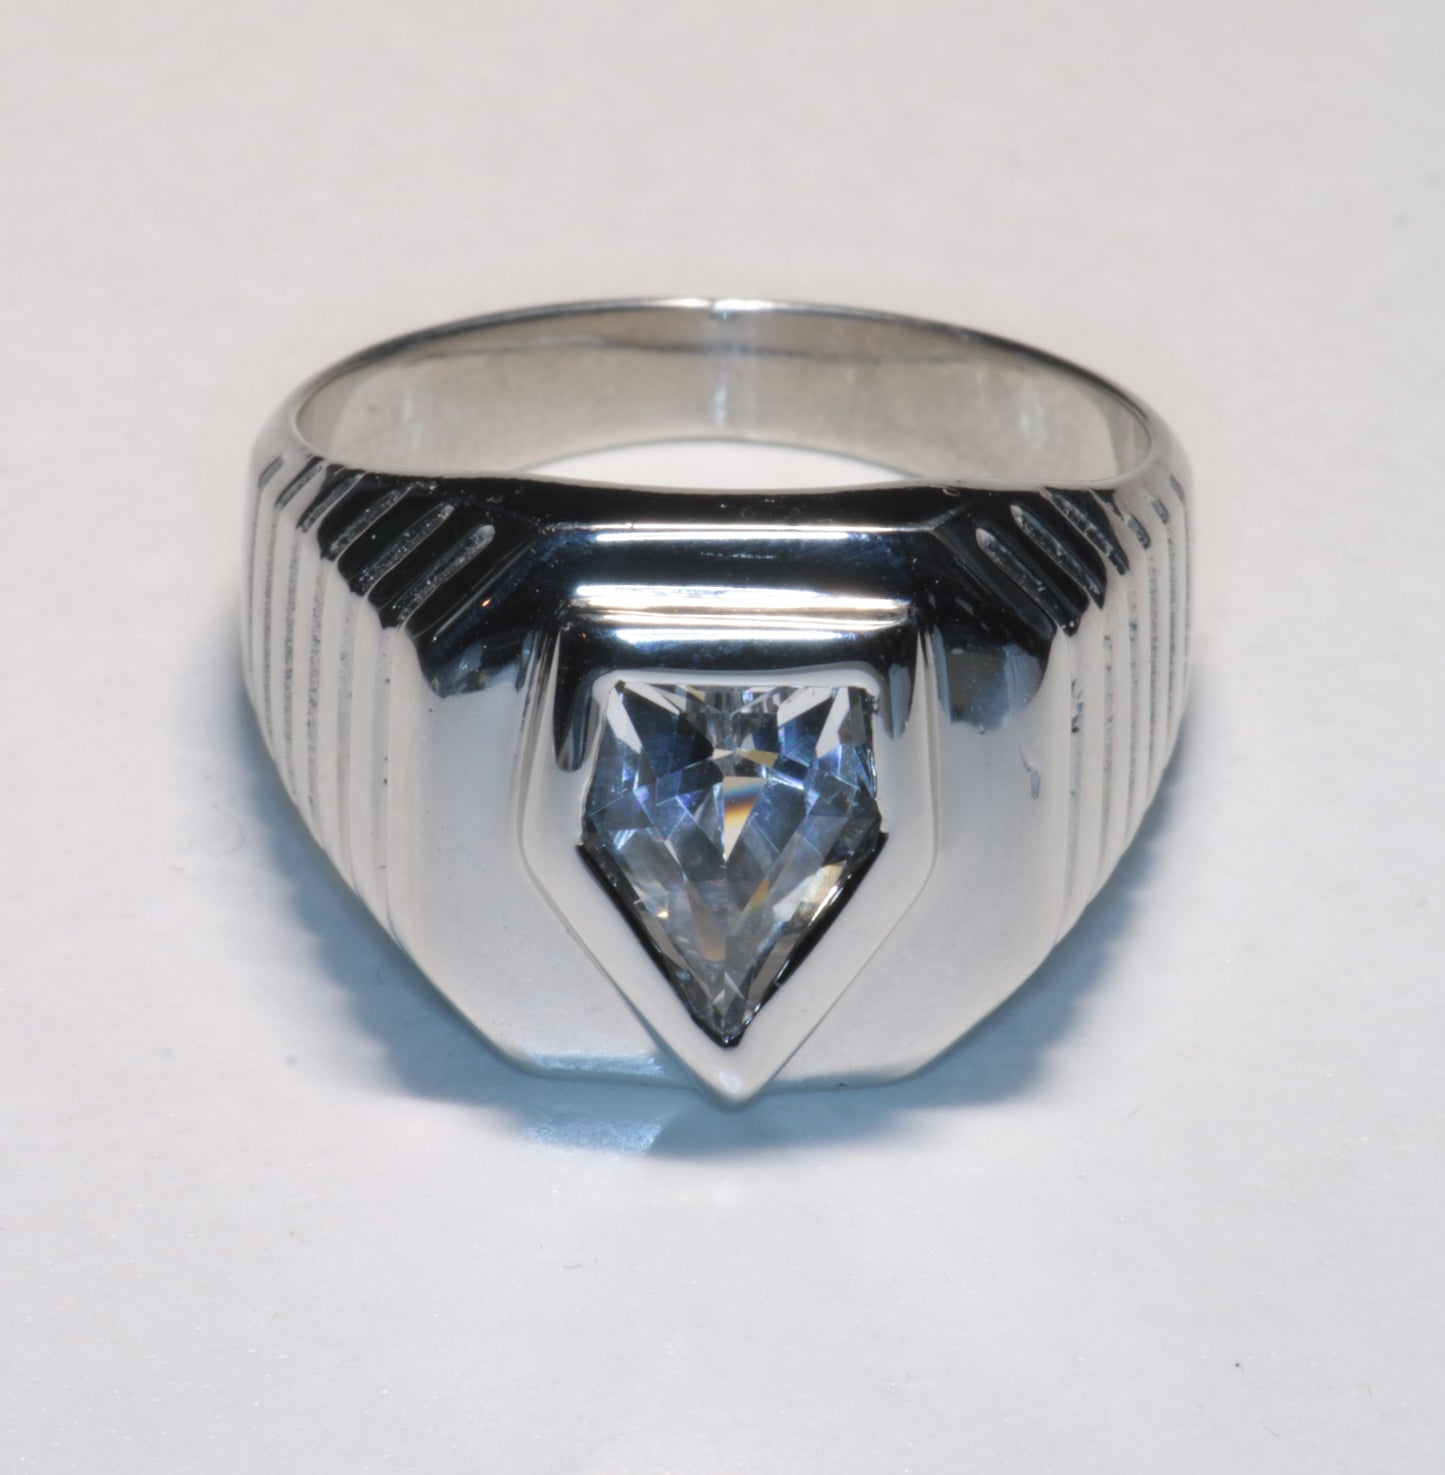 EOTS Cut F-35 Window Sapphire Rings in Sterling Silver